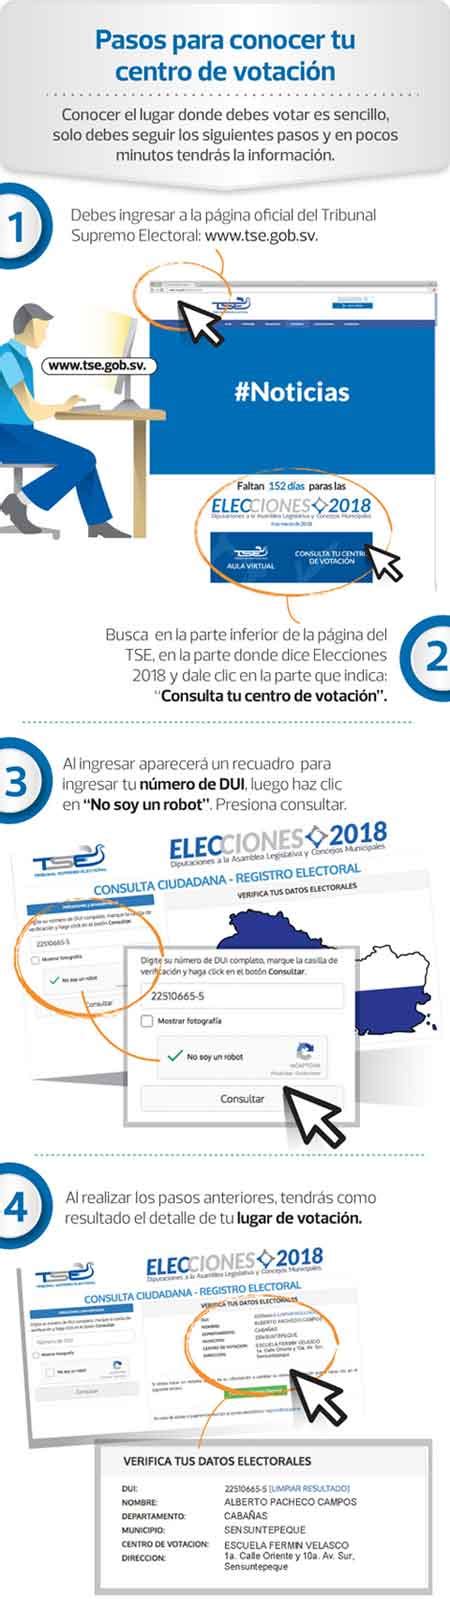 Dónde me toca votar 2018   El Salvador mi país